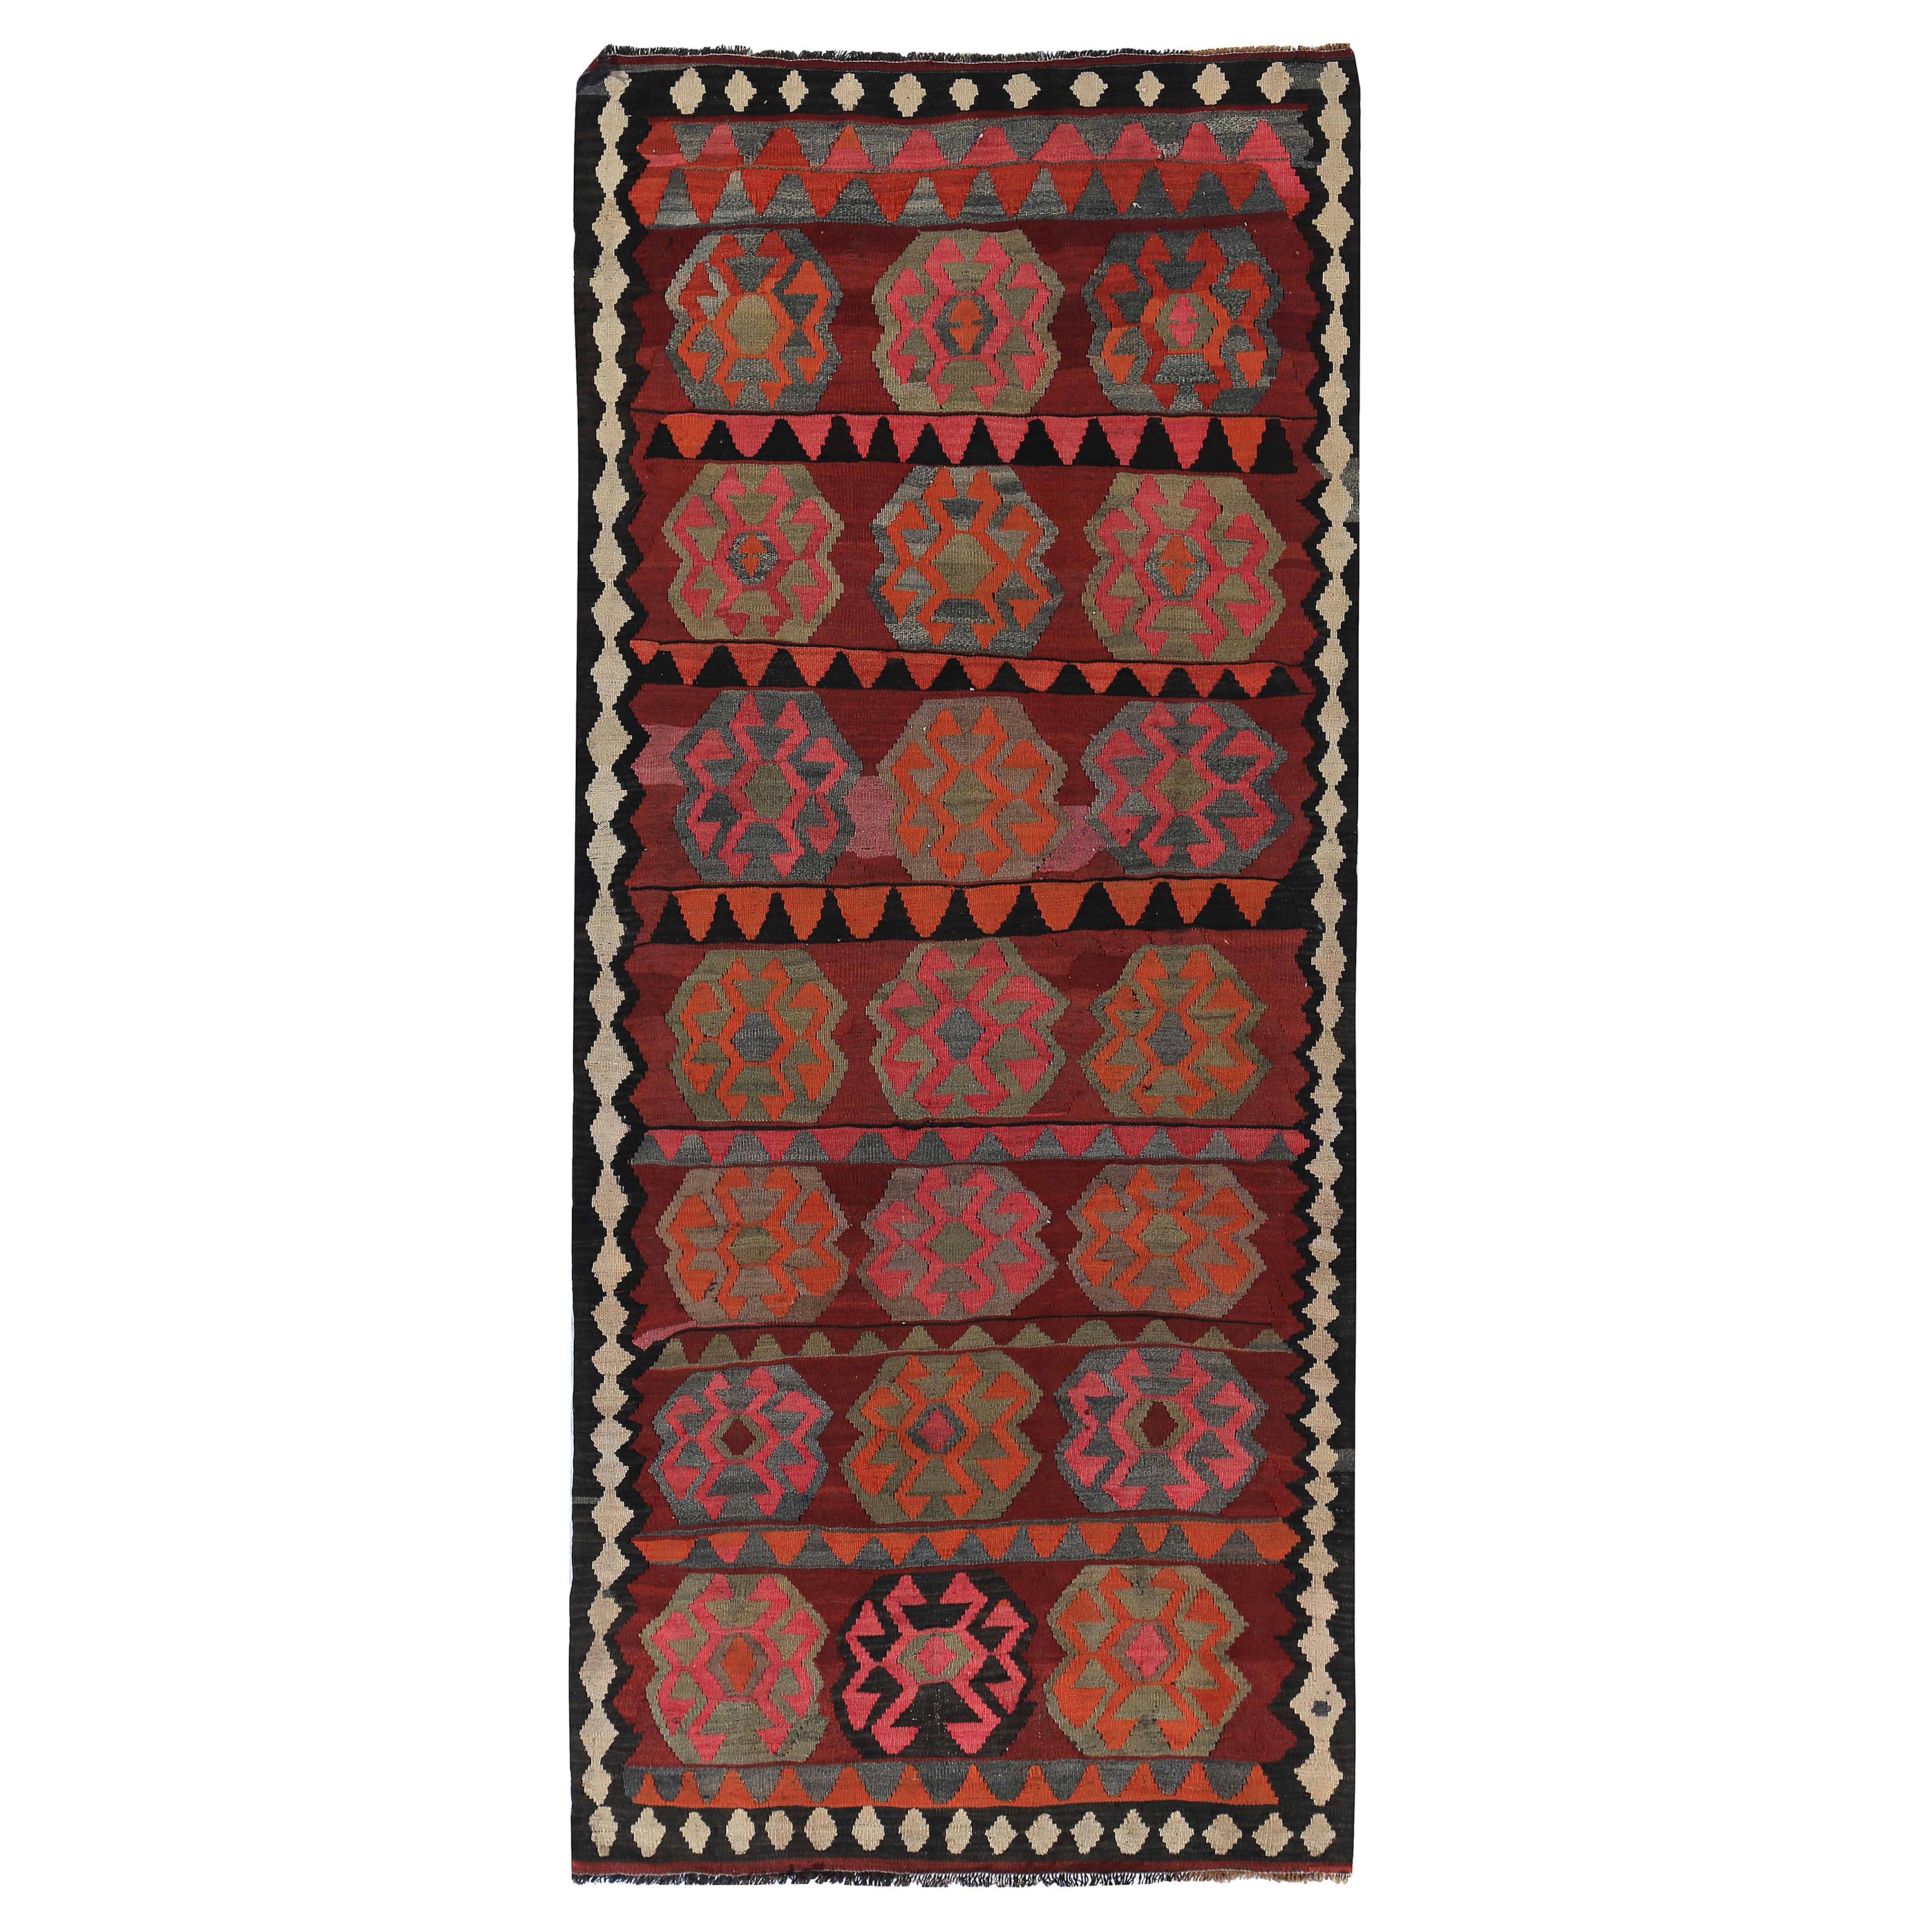 Tapis de couloir Kilim turc moderne avec médaillons tribaux orange et rose